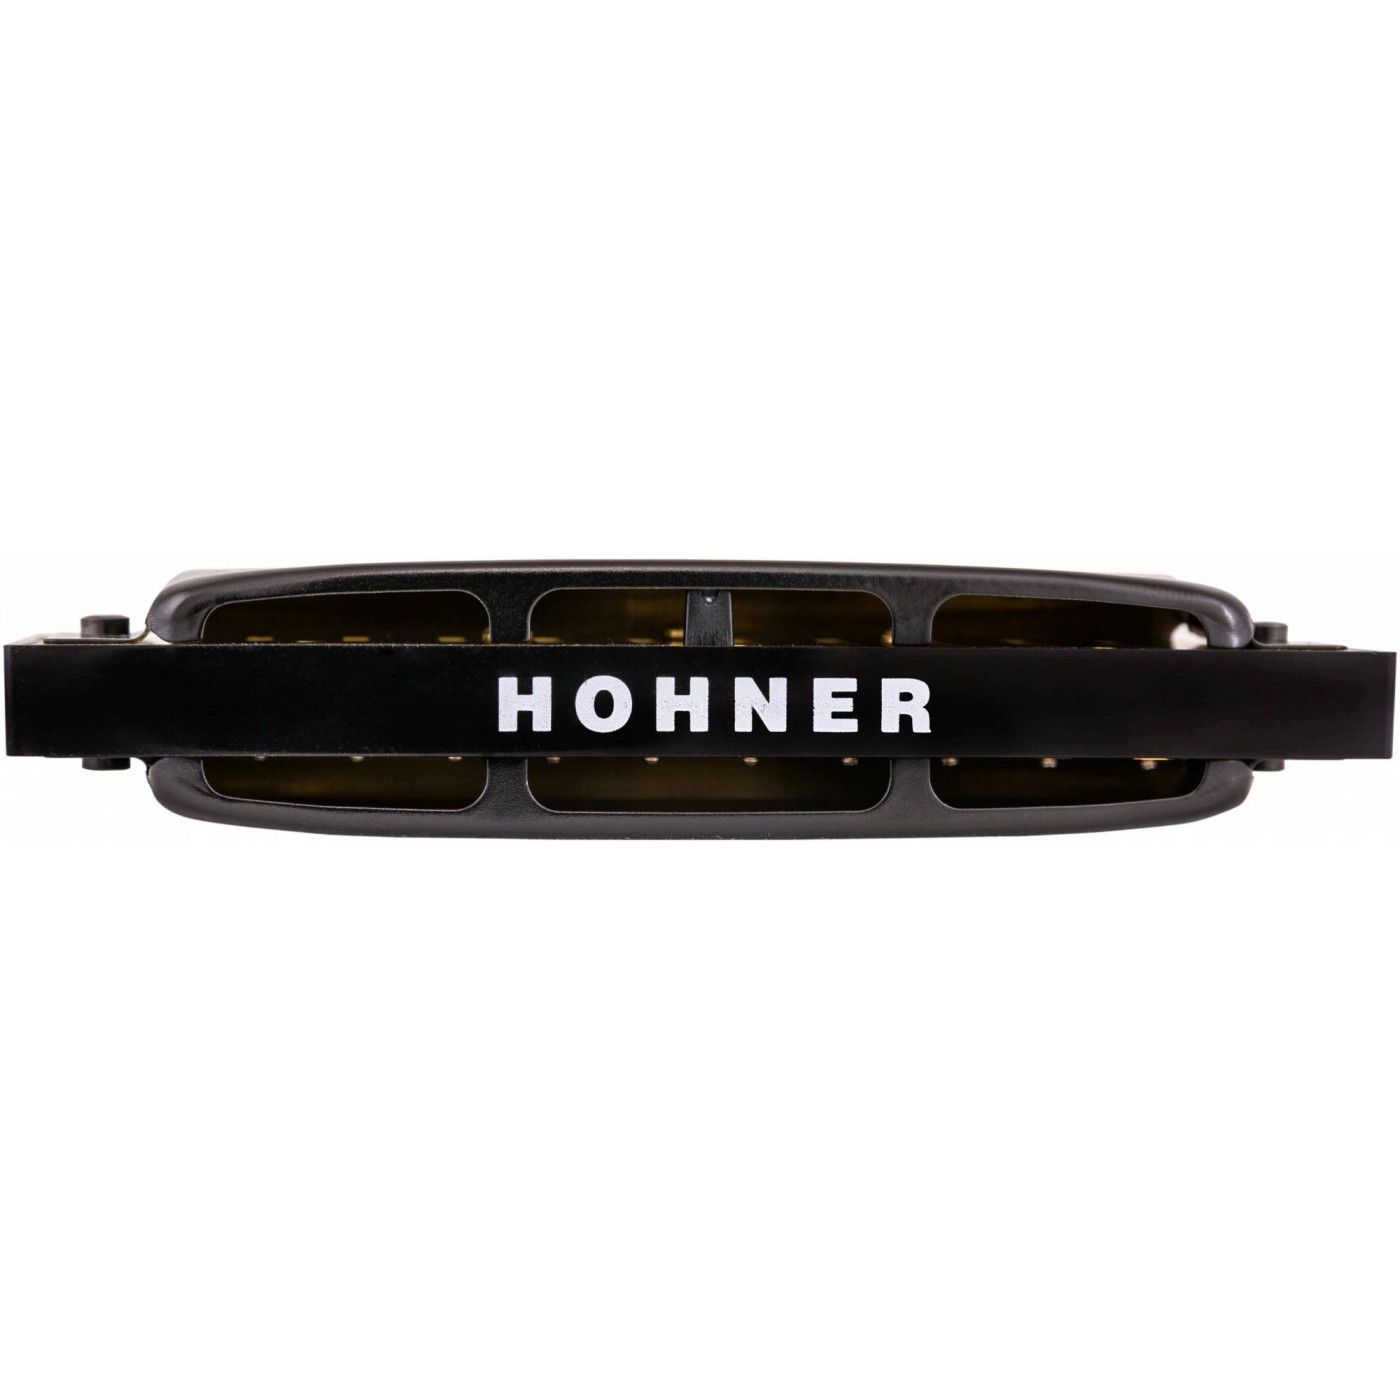 Детальная картинка товара Hohner Pro Harp 562/20 MS C в магазине Музыкальный Мир